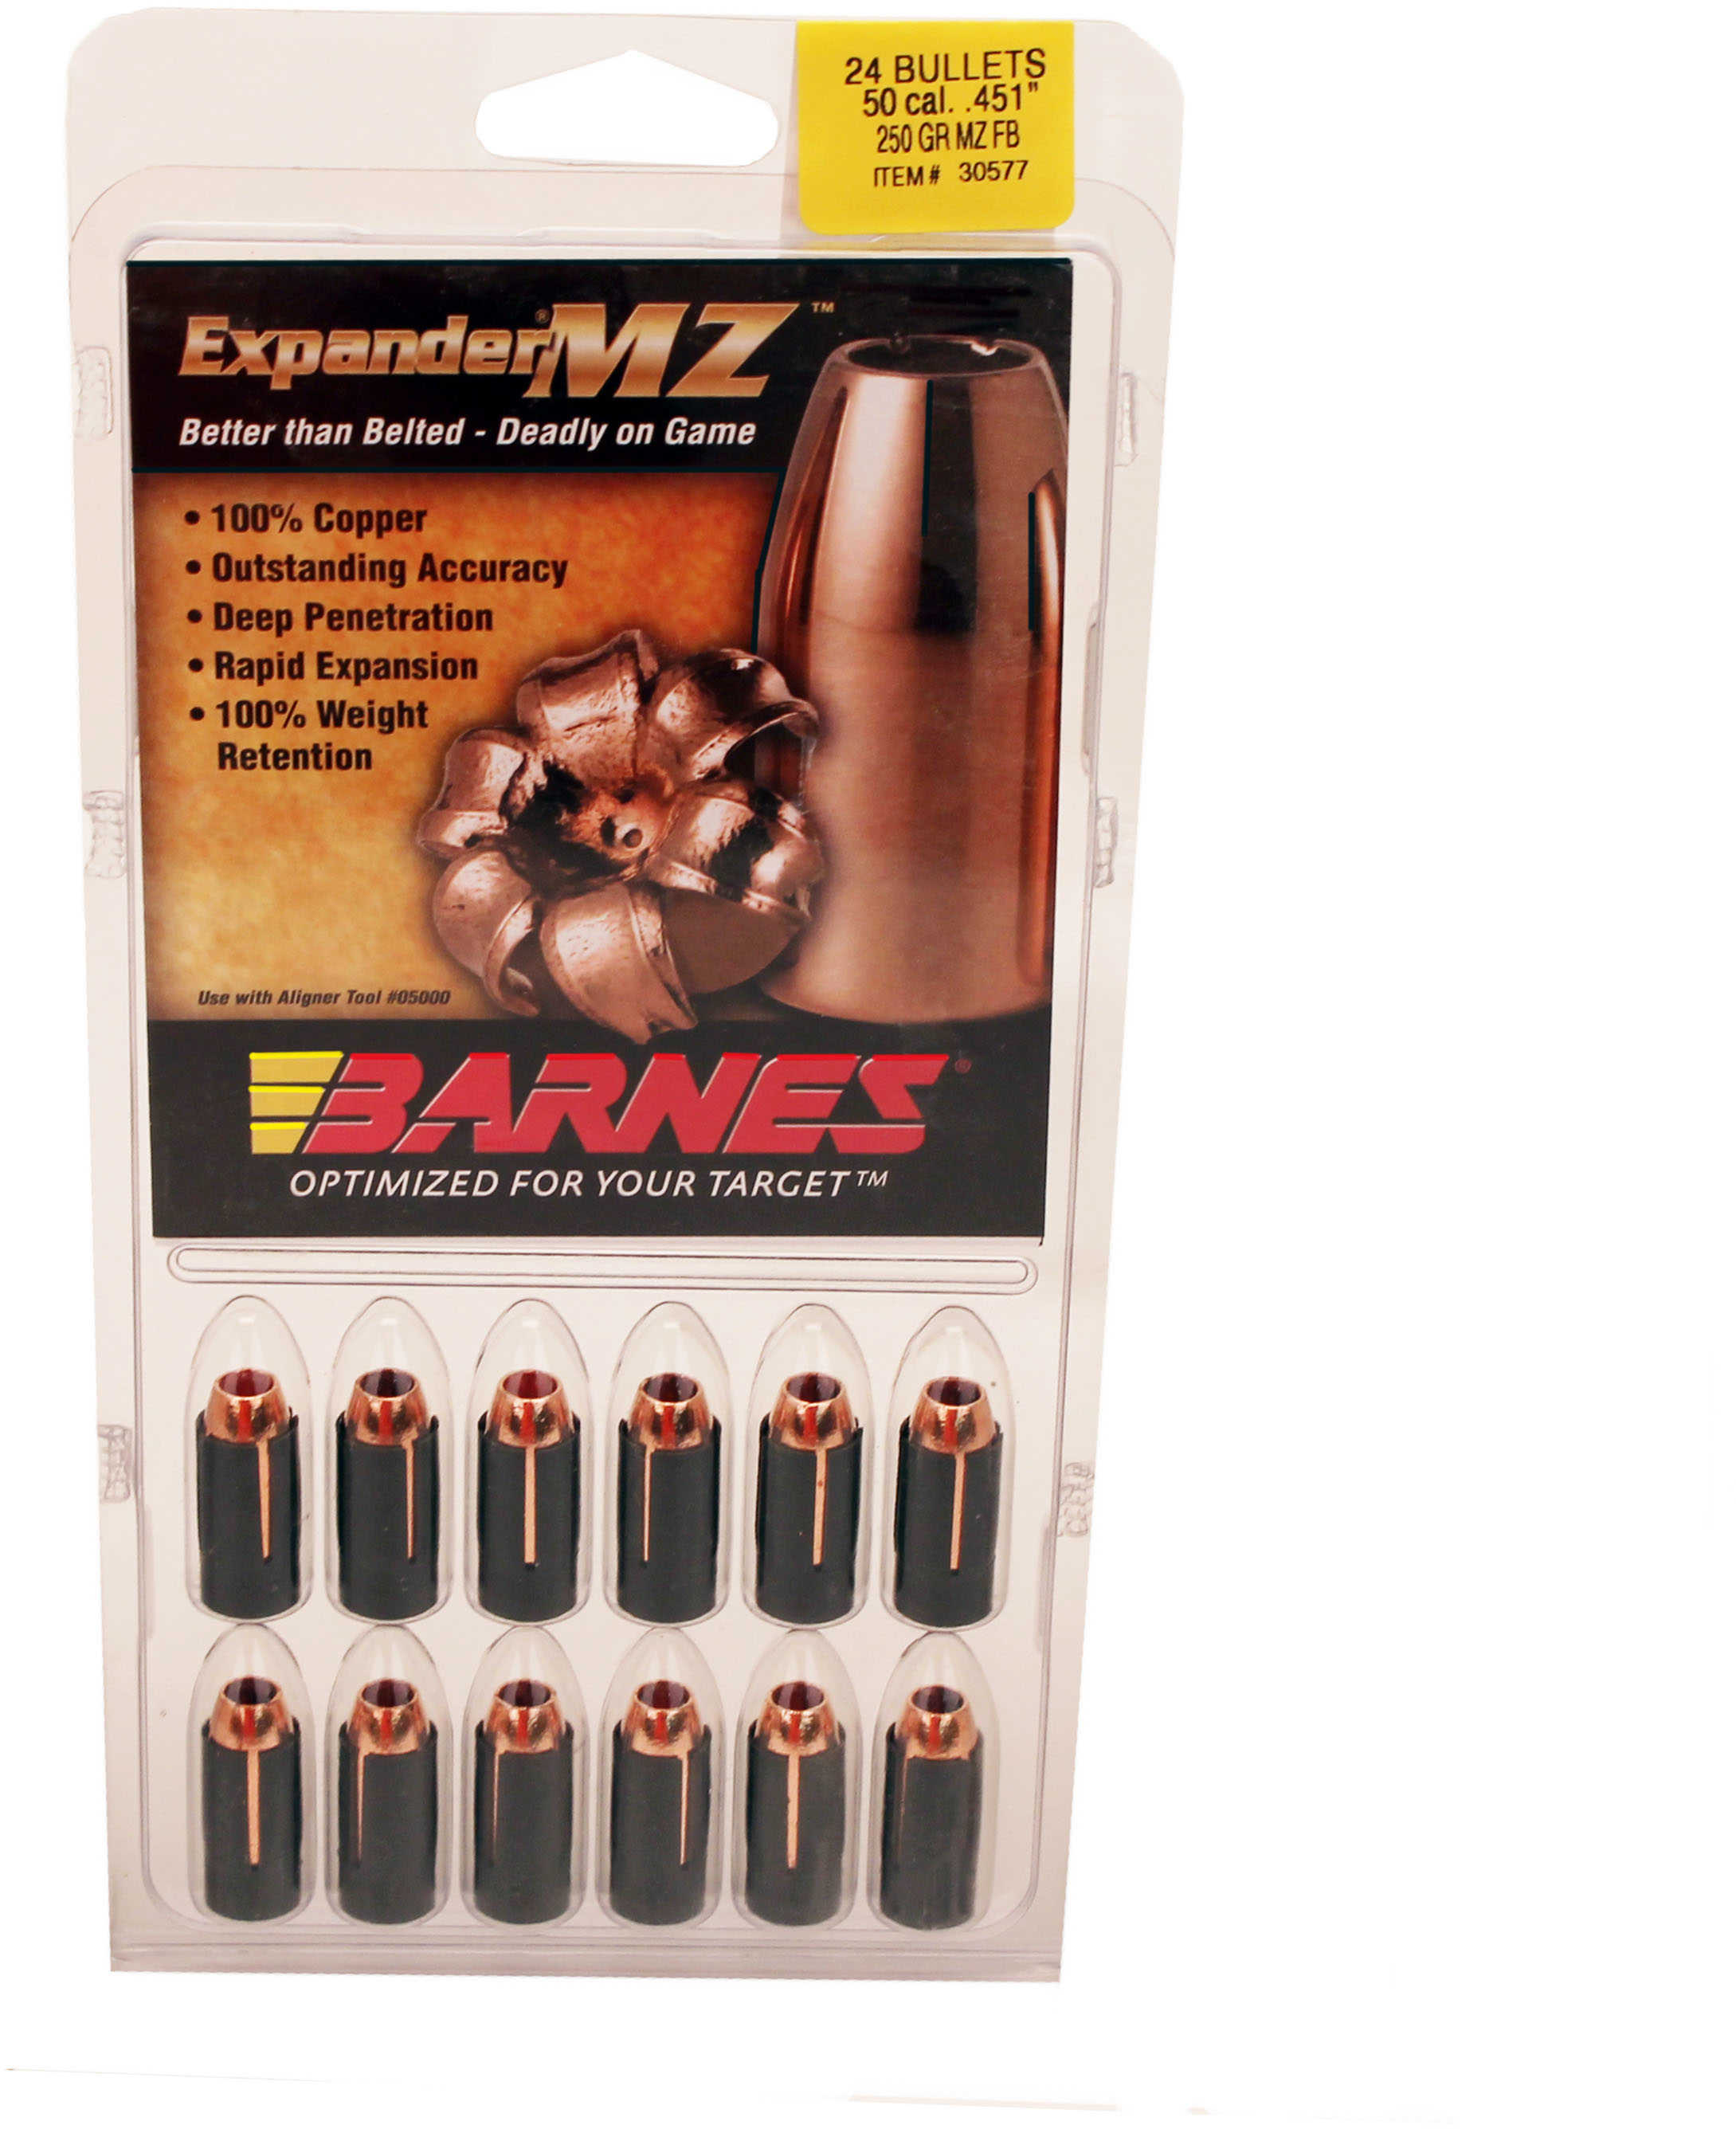 Barnes Bullet 50 Caliber .451dia 250 Grains Expander MZ